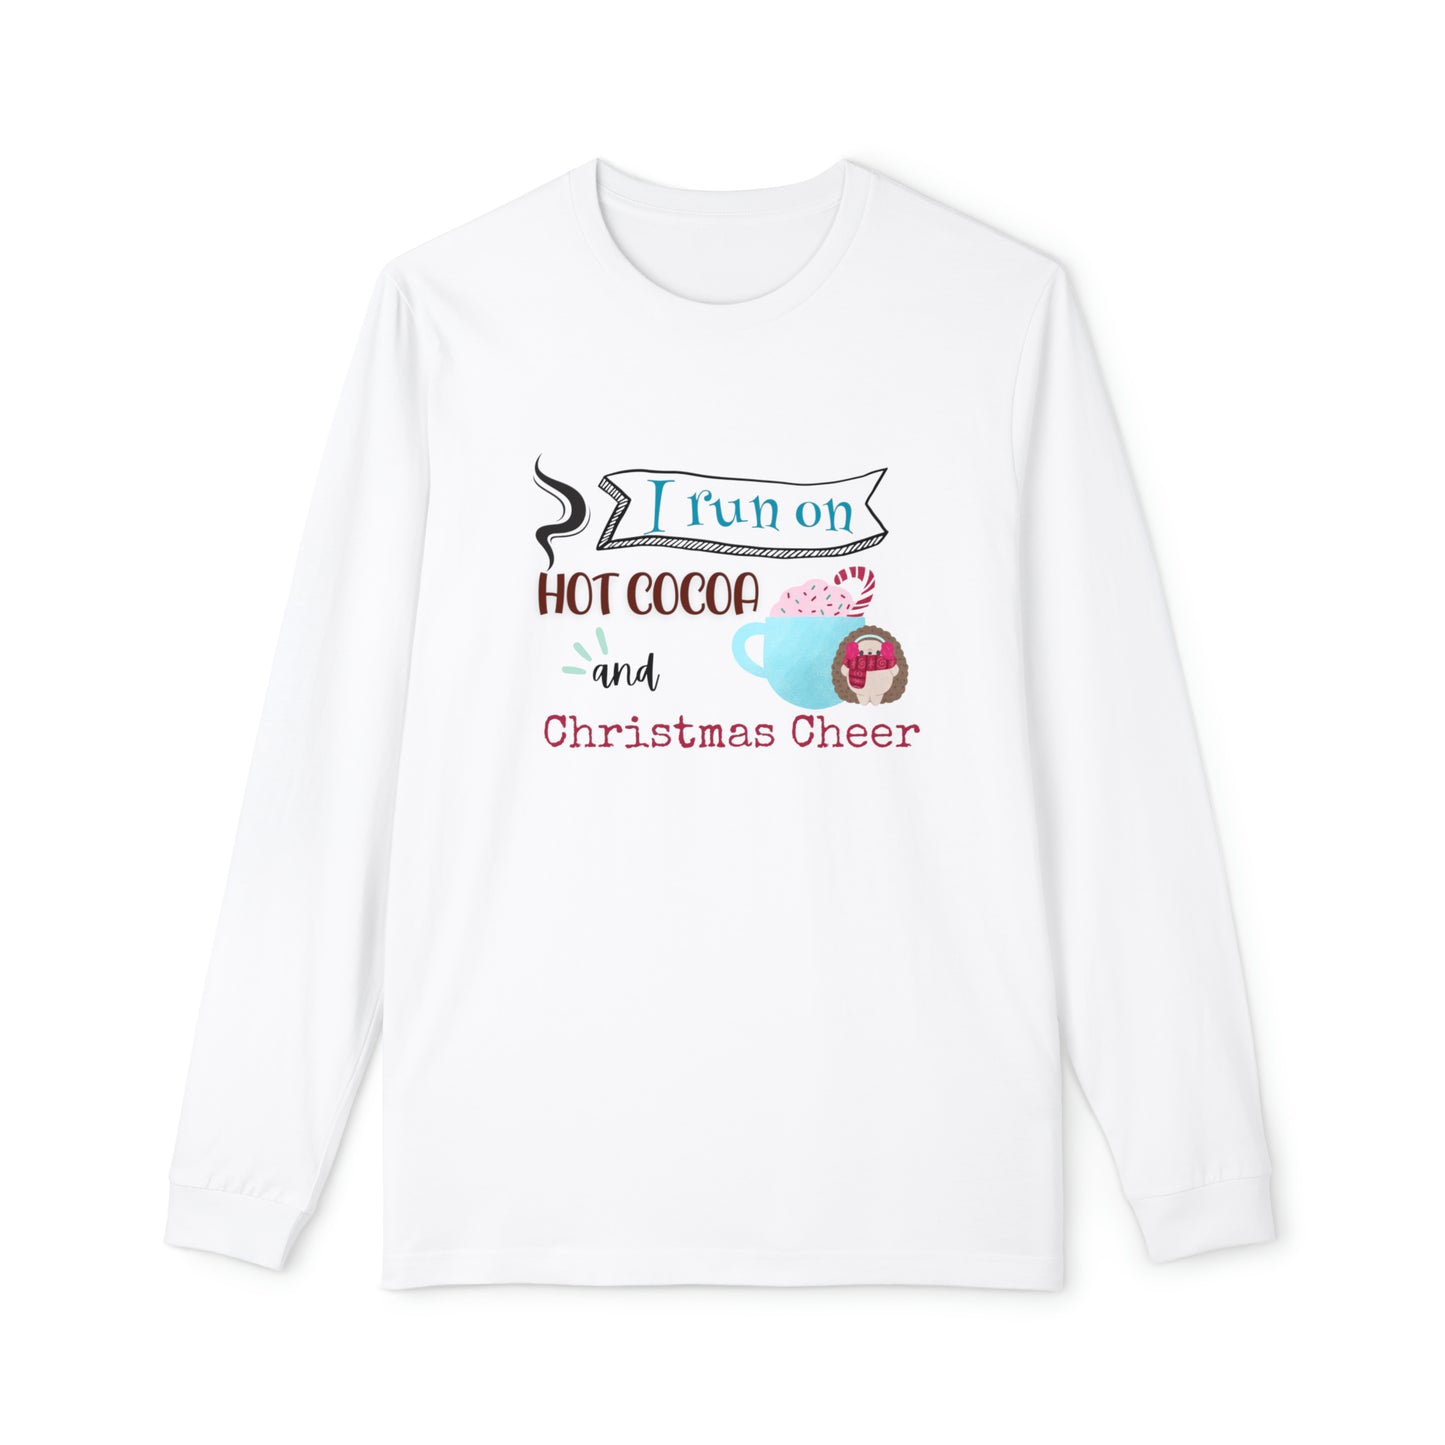 Women's Long Sleeve Pajama Set, Family Christmas Pajamas, "I run on hot cocoa and Christmas cheer"